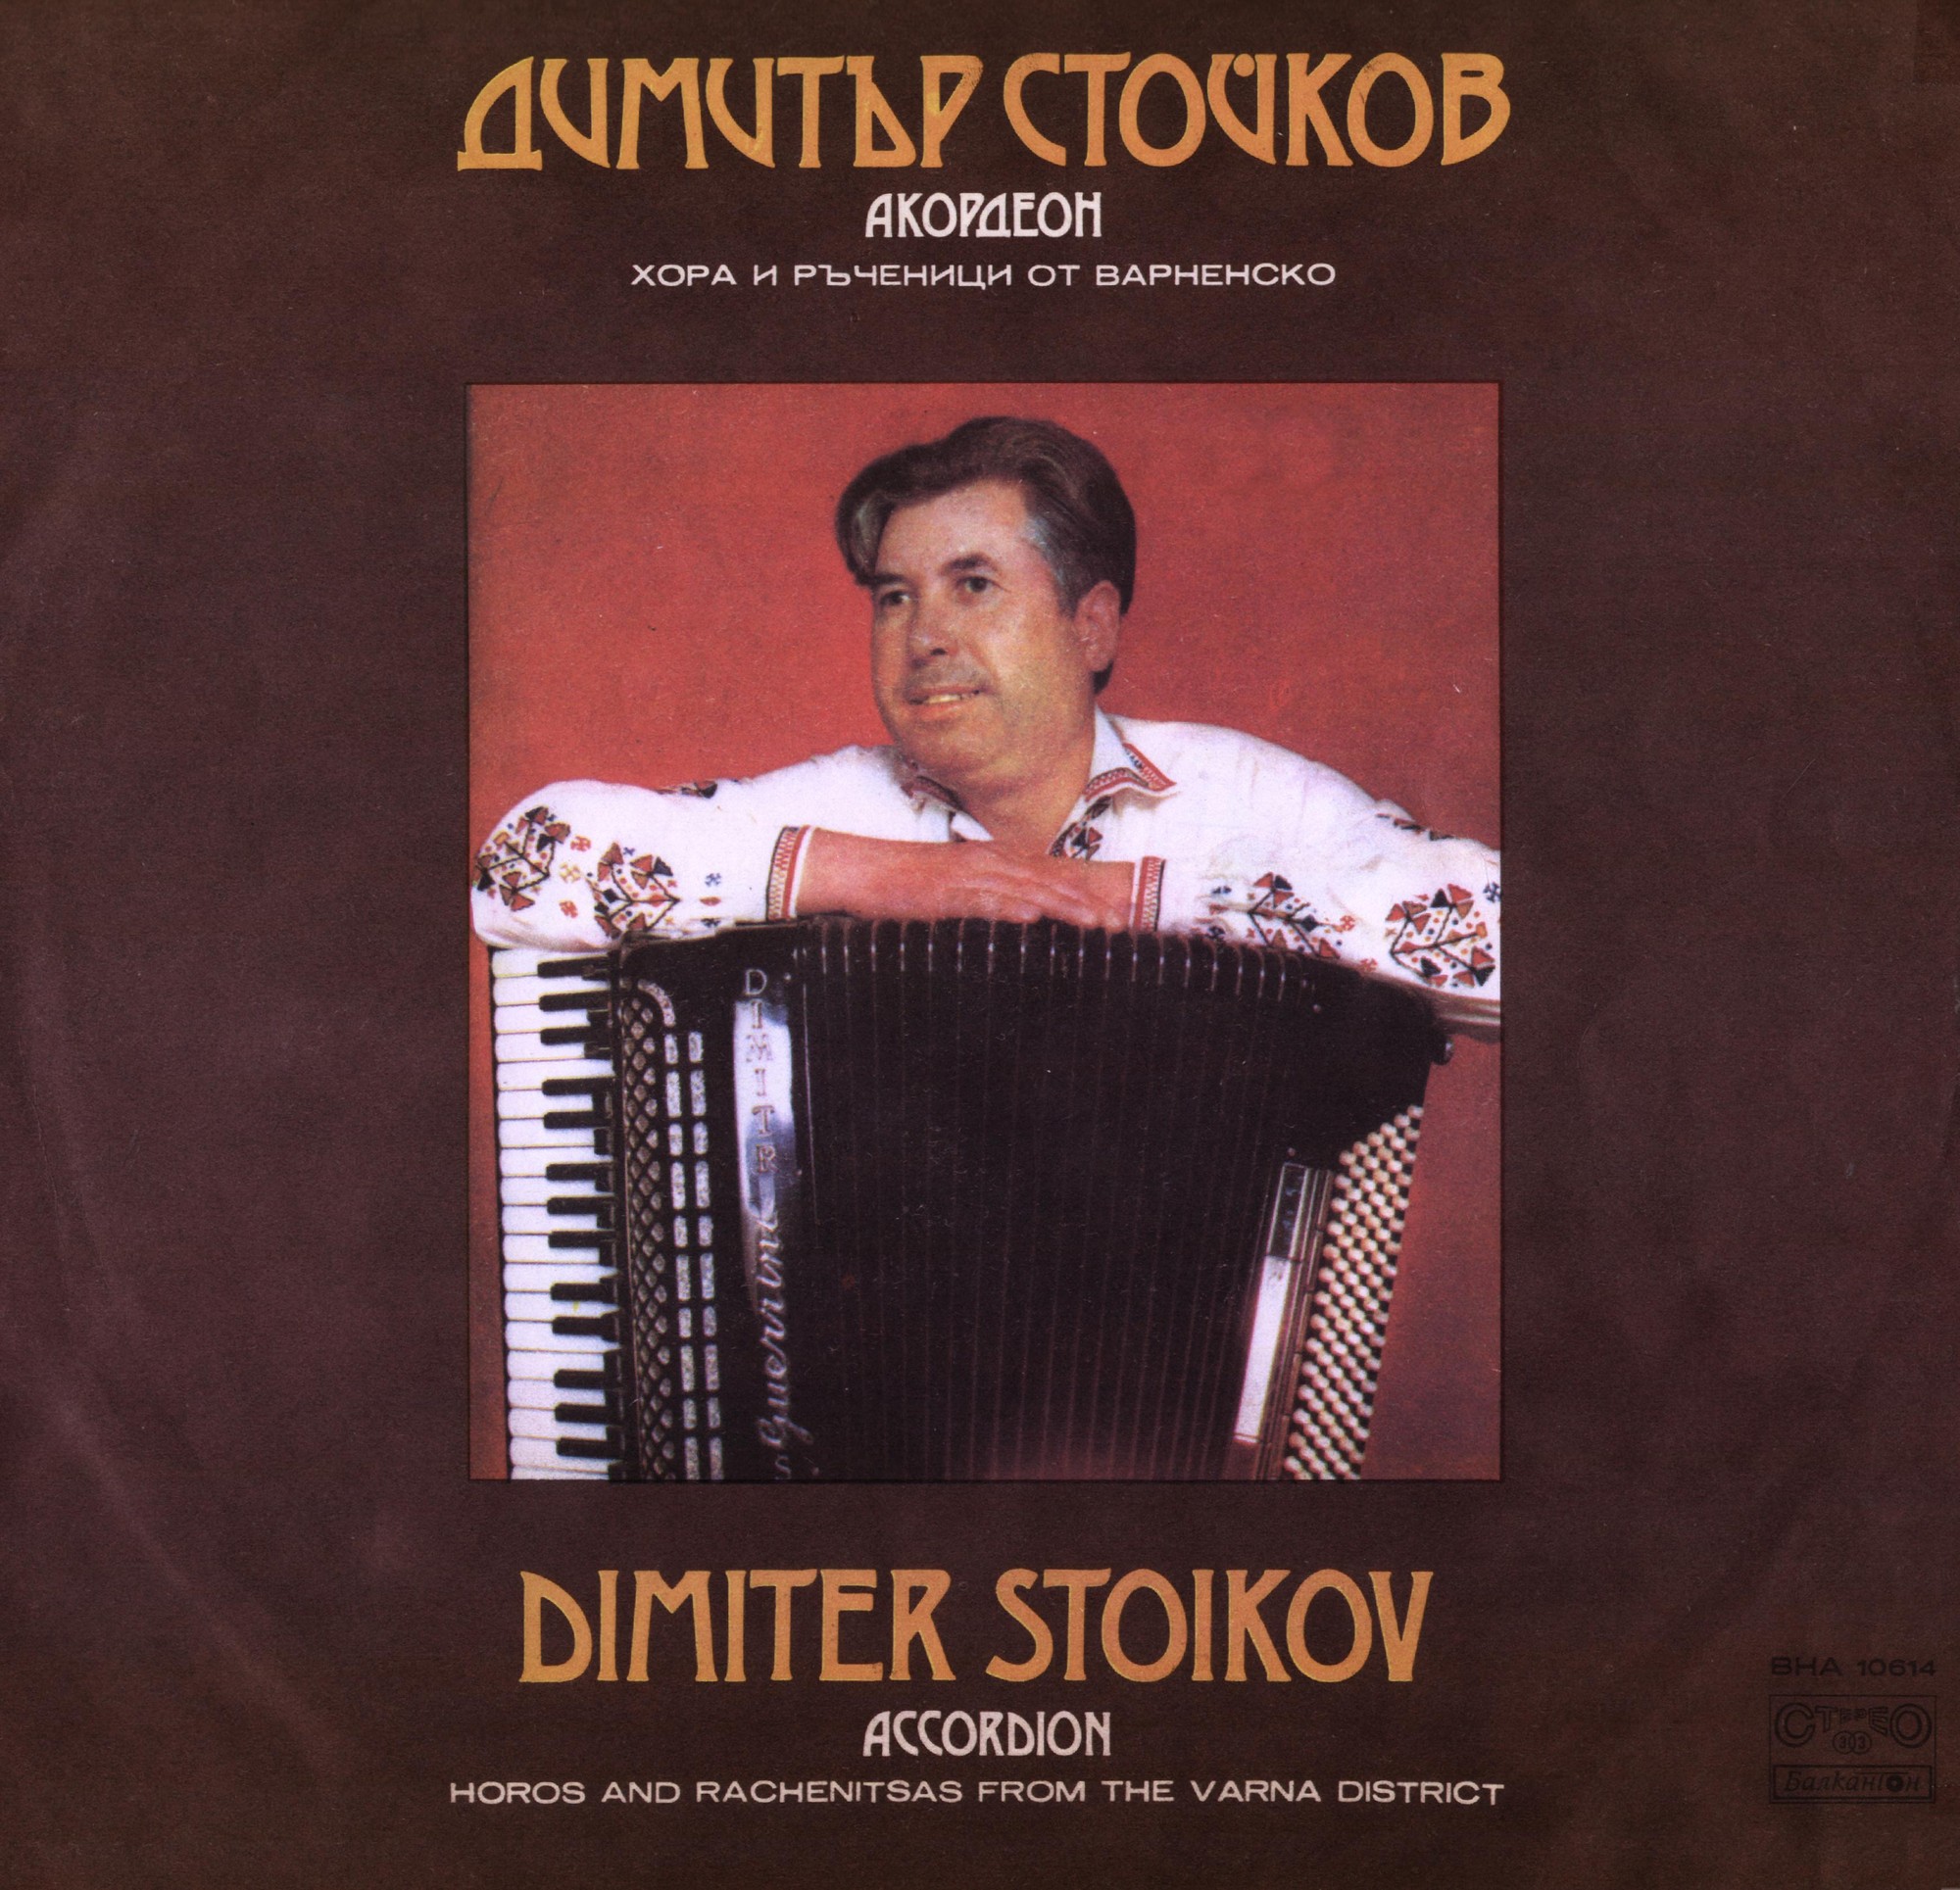 Димитър Стойков - акордеон. Хора и ръченици от Варненско